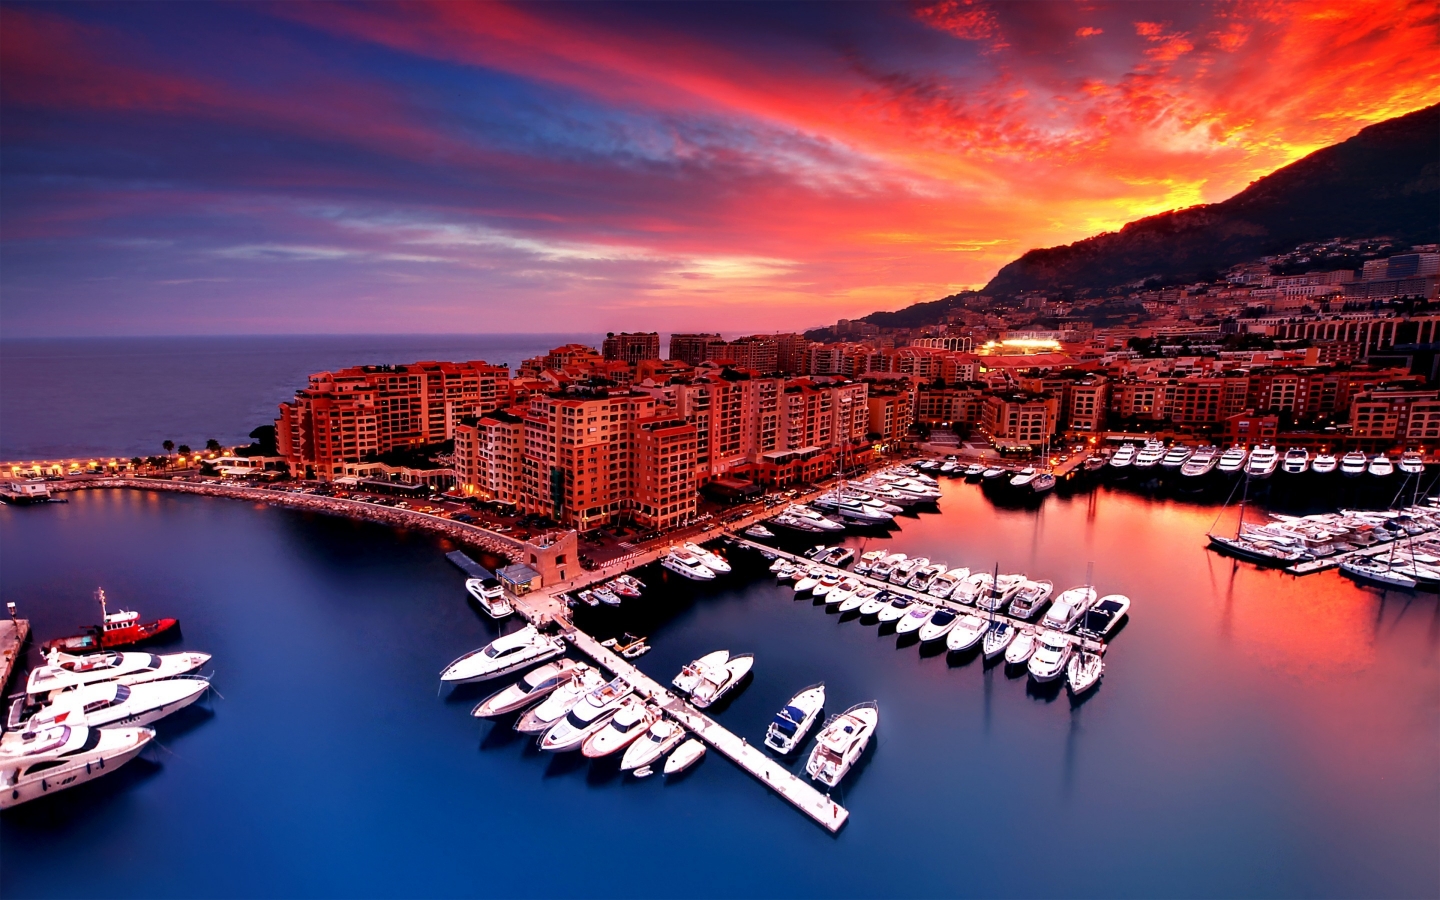 Sunrise in Monaco for 1440 x 900 widescreen resolution